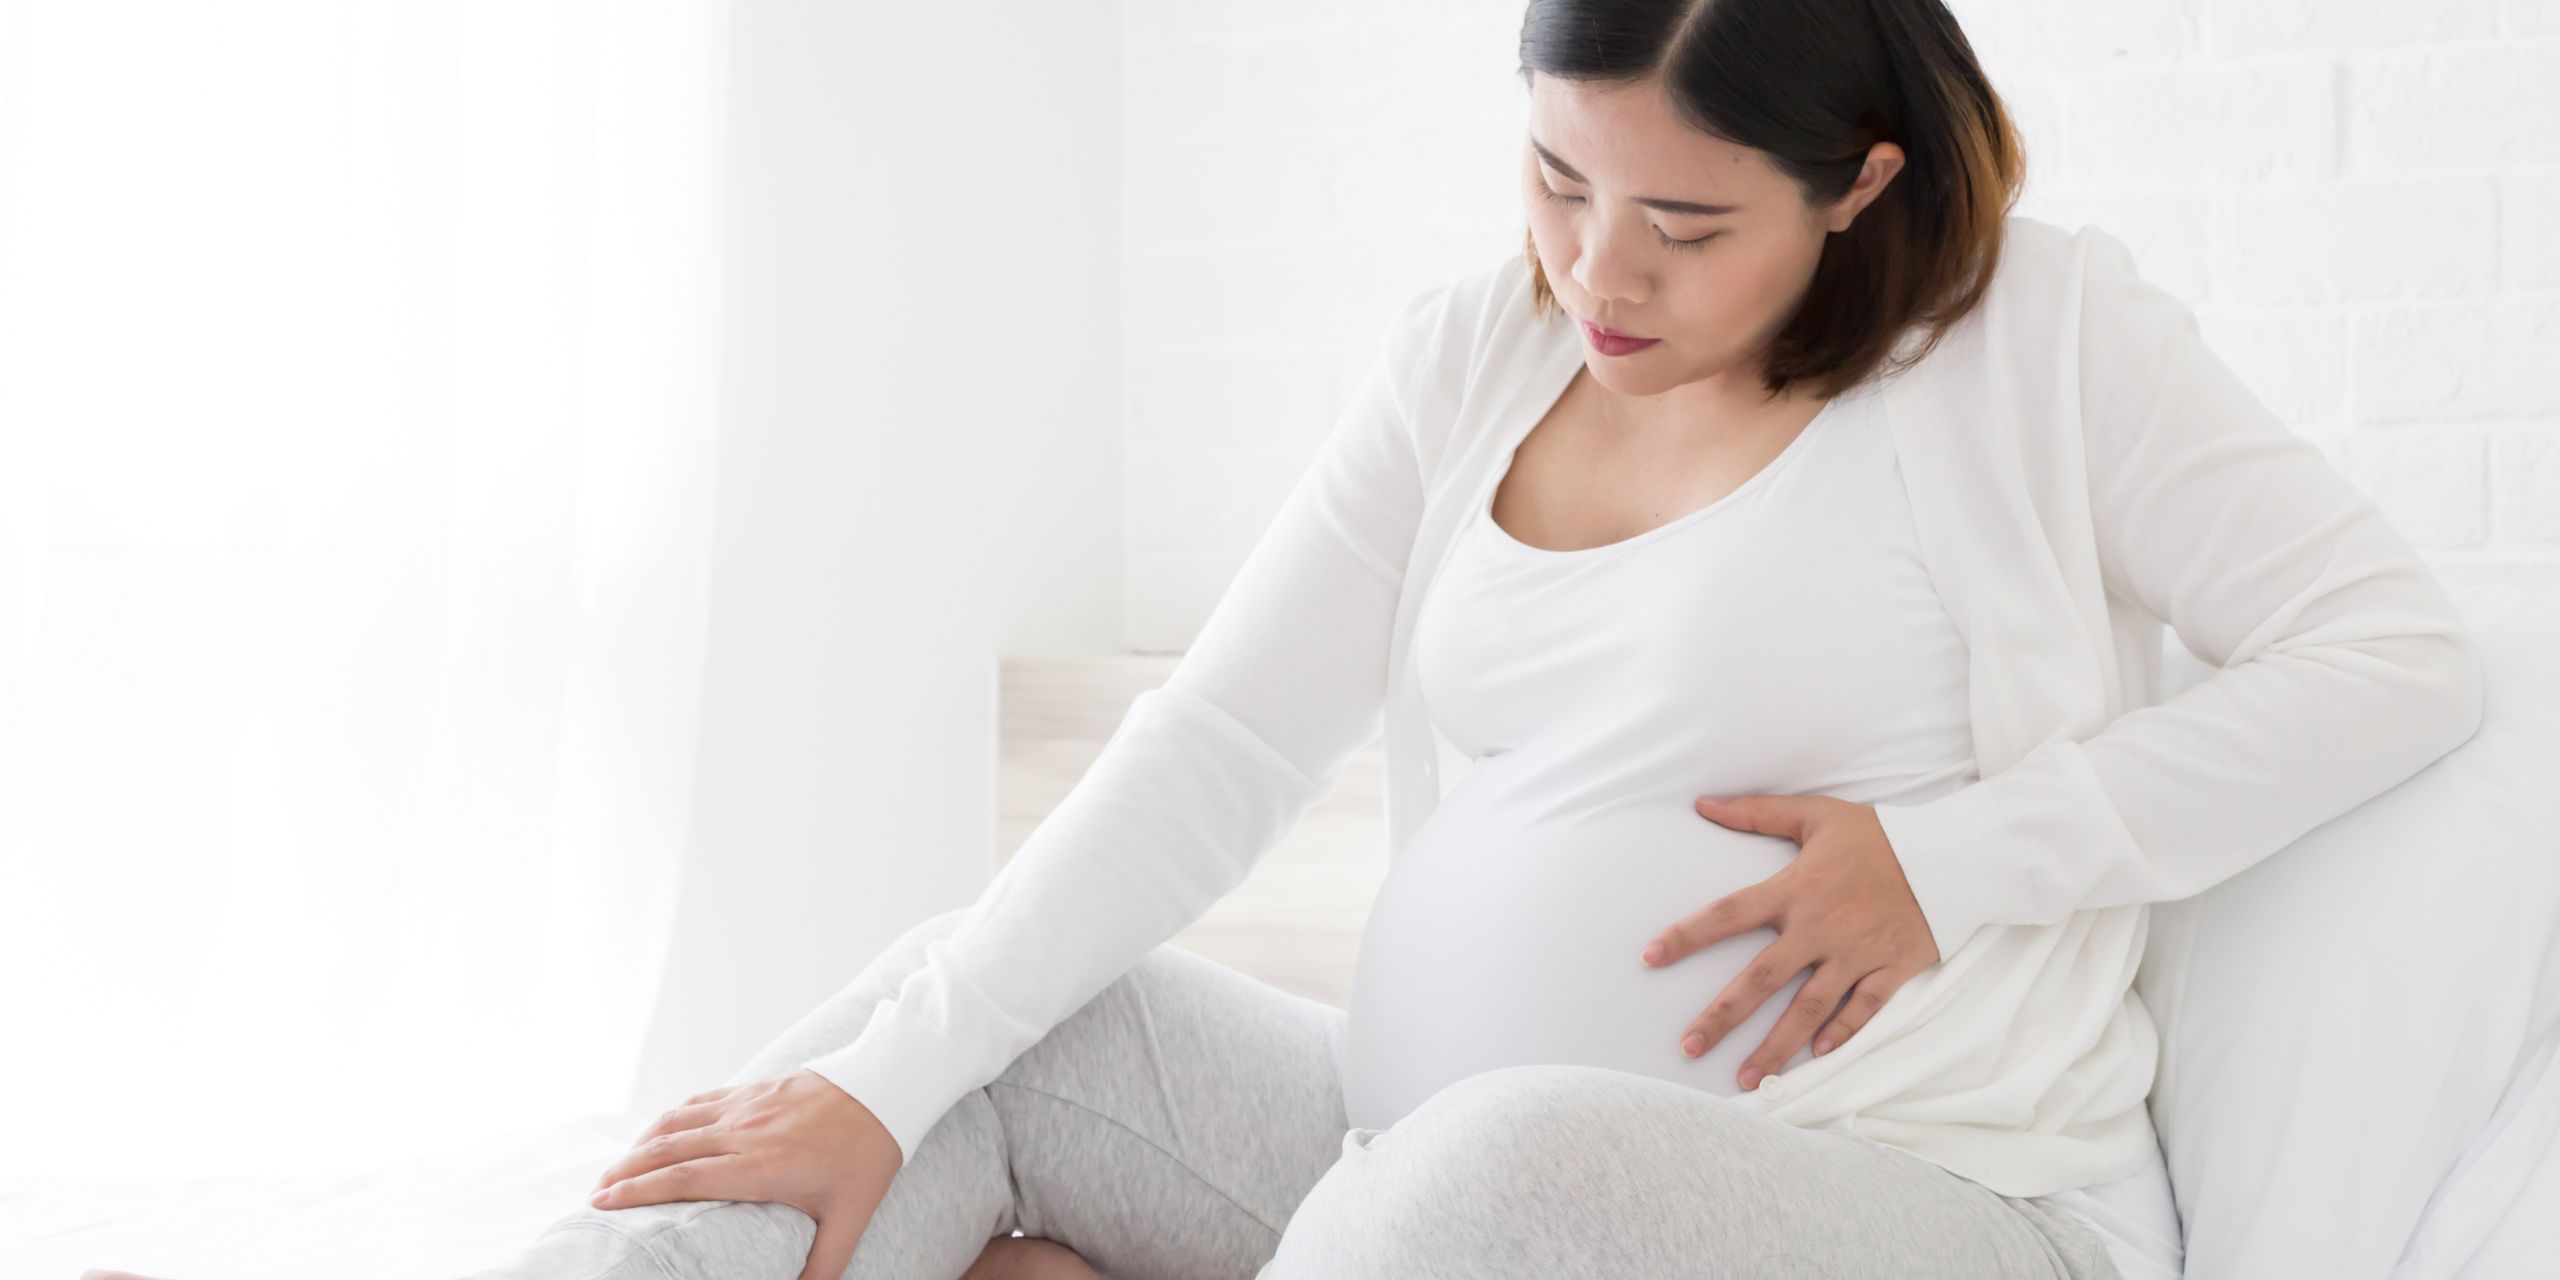 درد پا در دروان بارداری